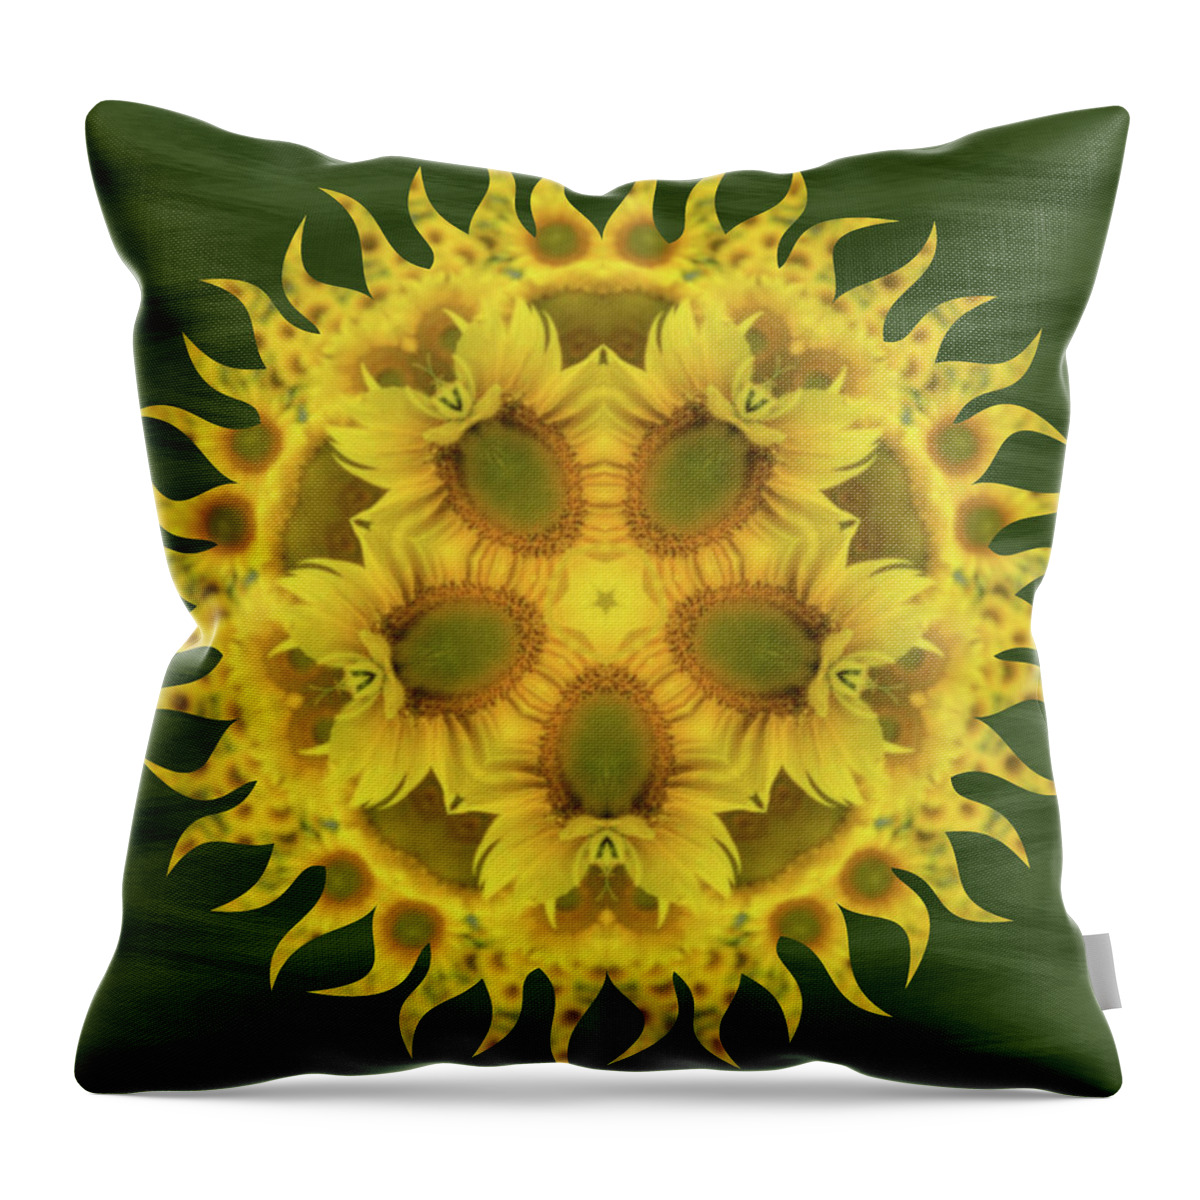 Kaleidoscope Throw Pillow featuring the photograph Sunflower #2 by Minnie Gallman